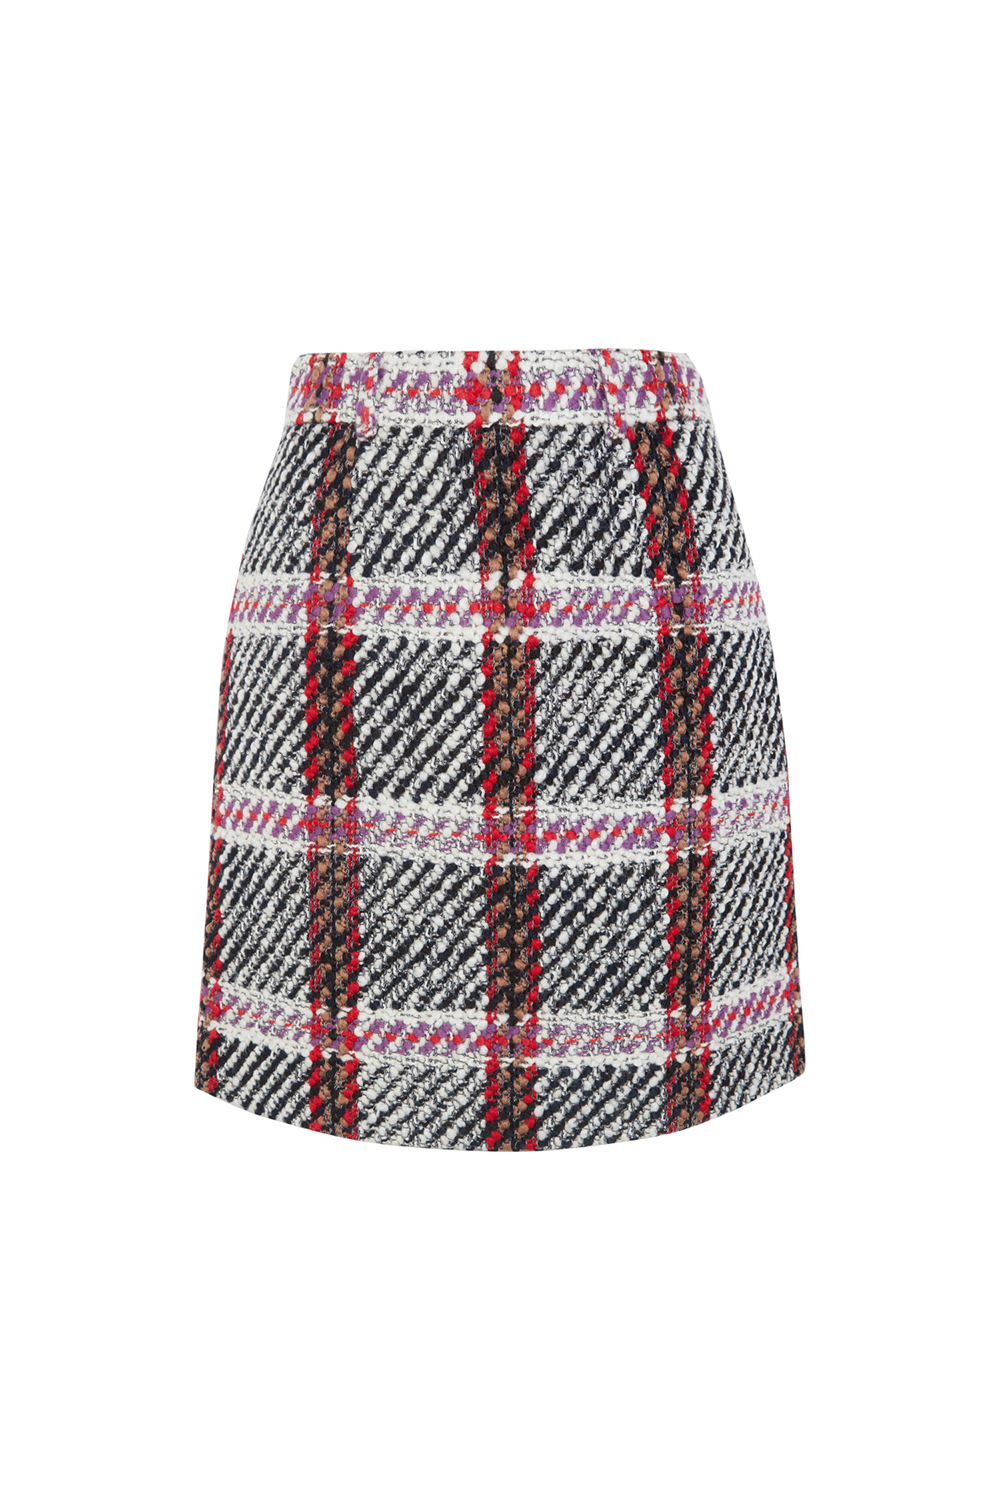 Carven Tartan Skirt, $368 USD from Net-A -Porter